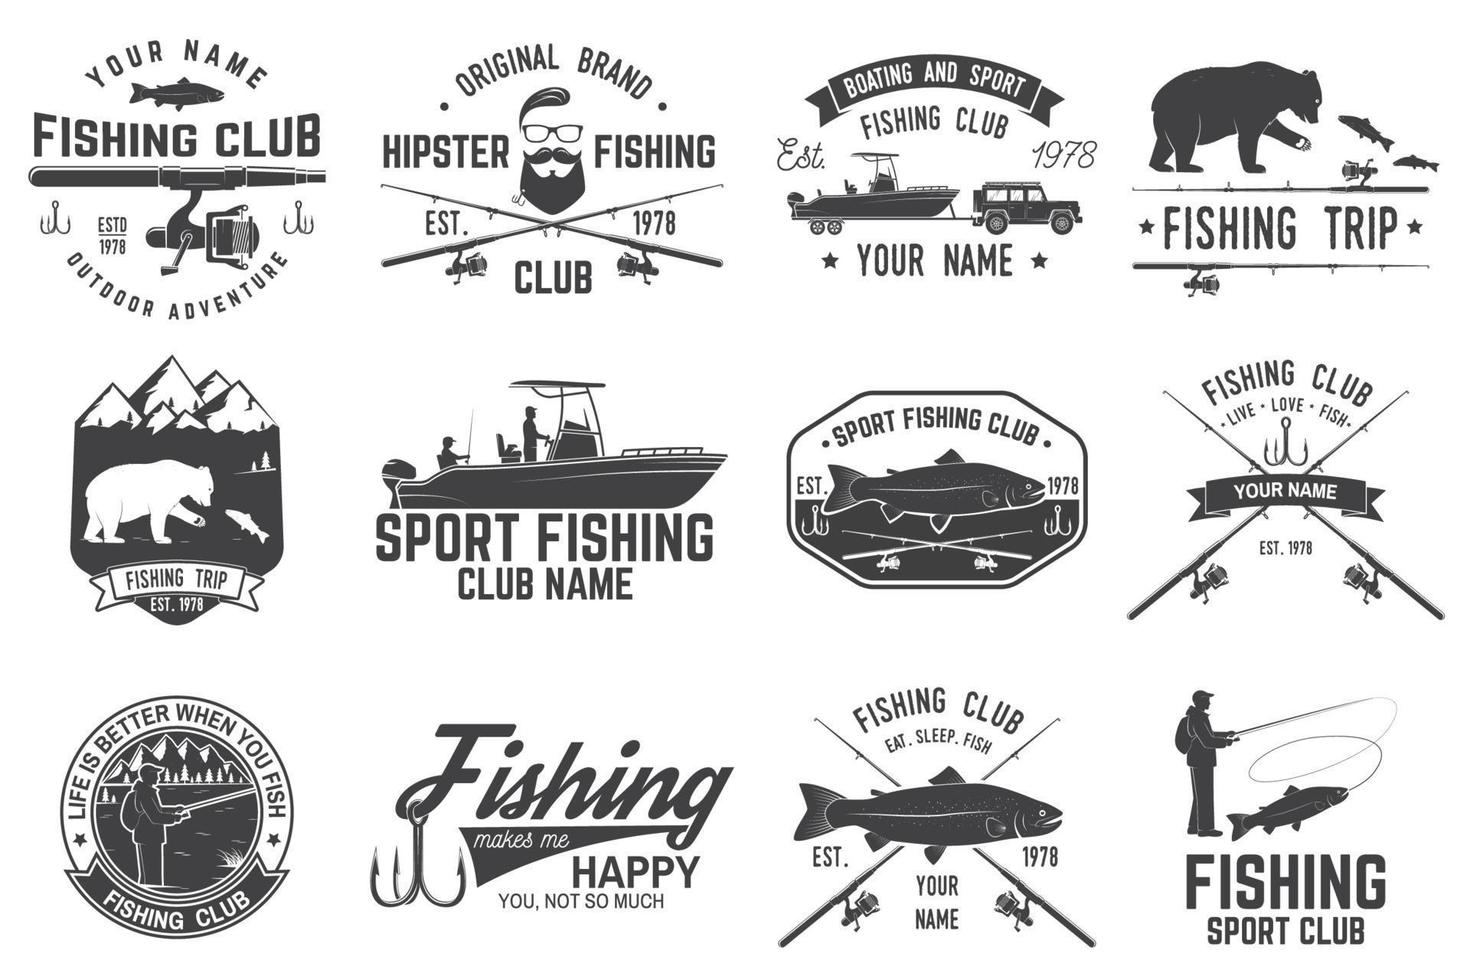 club de pêche sportive. illustration vectorielle. vecteur